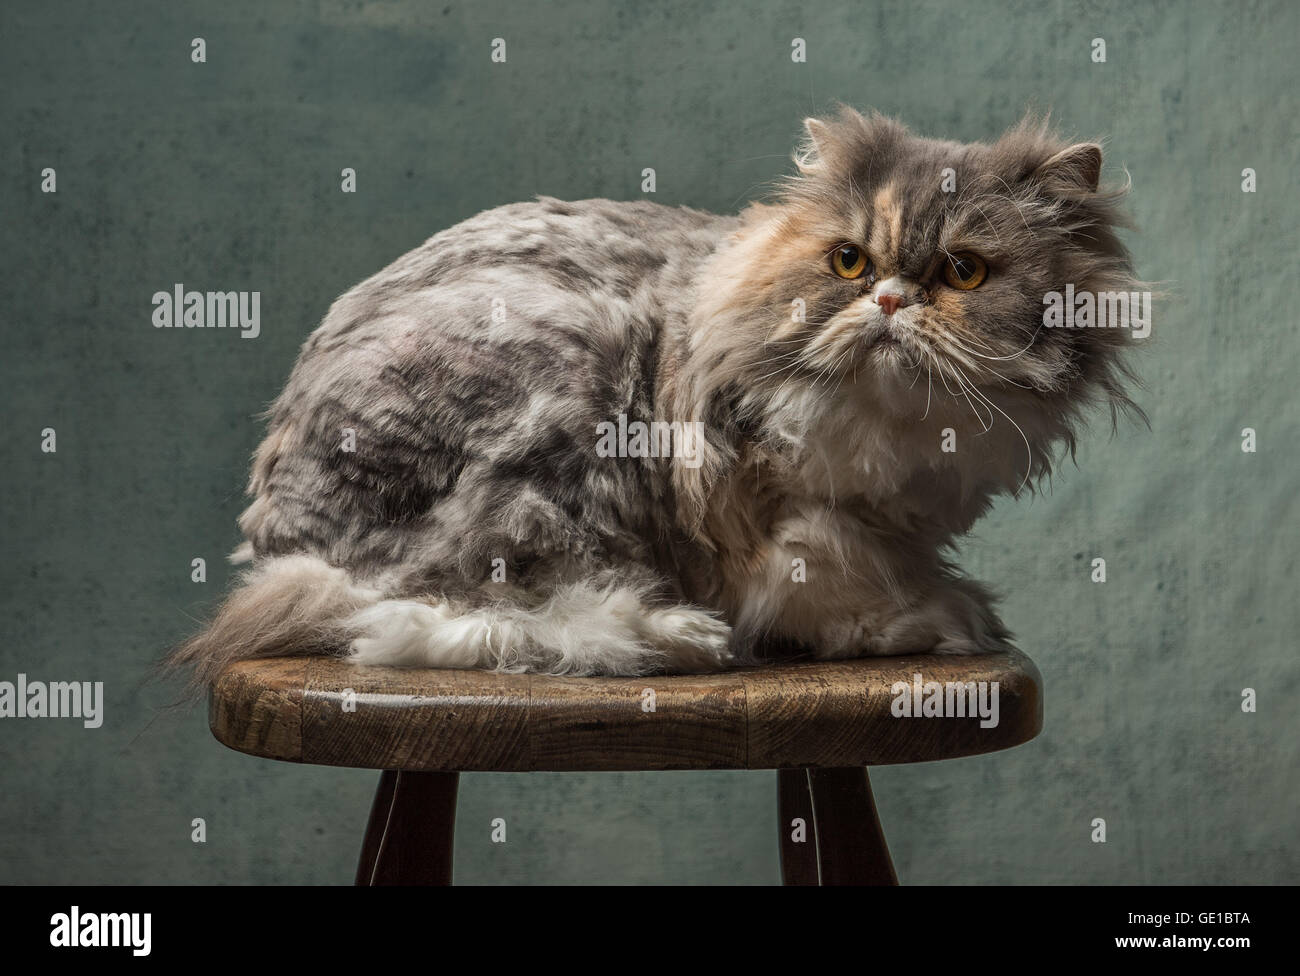 Porträt von eine flauschige Katze sitzt auf einem hölzernen Schemel Stockfoto